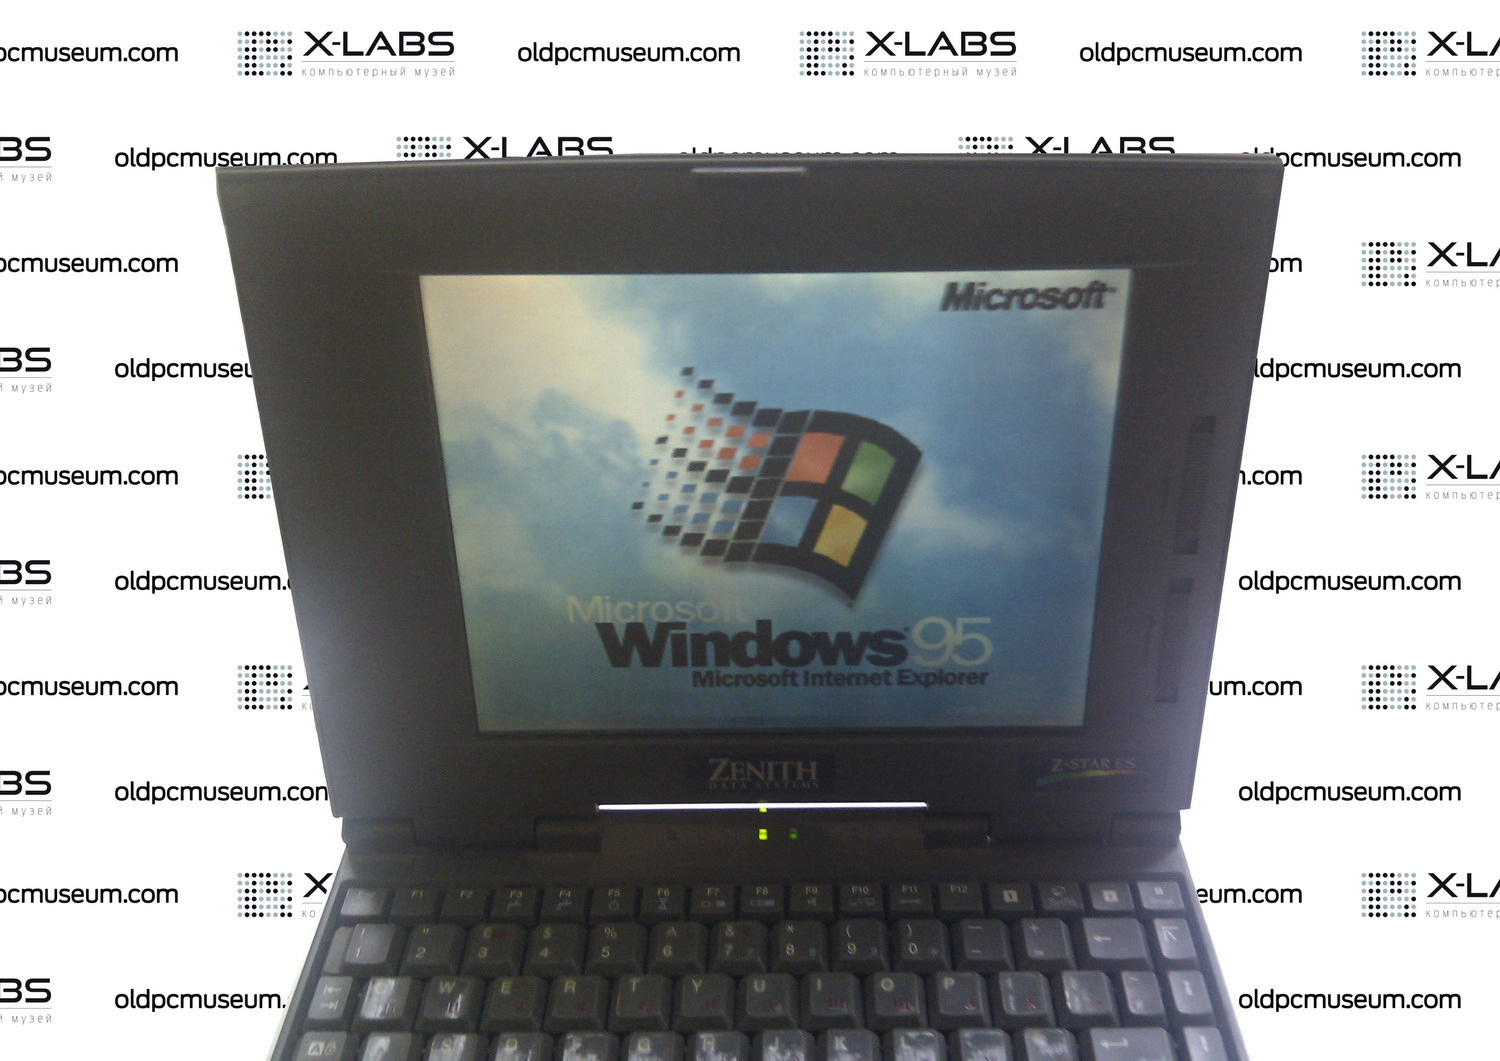 Zenith Z-Star ES i486dx2-50 notebook running Windows 95